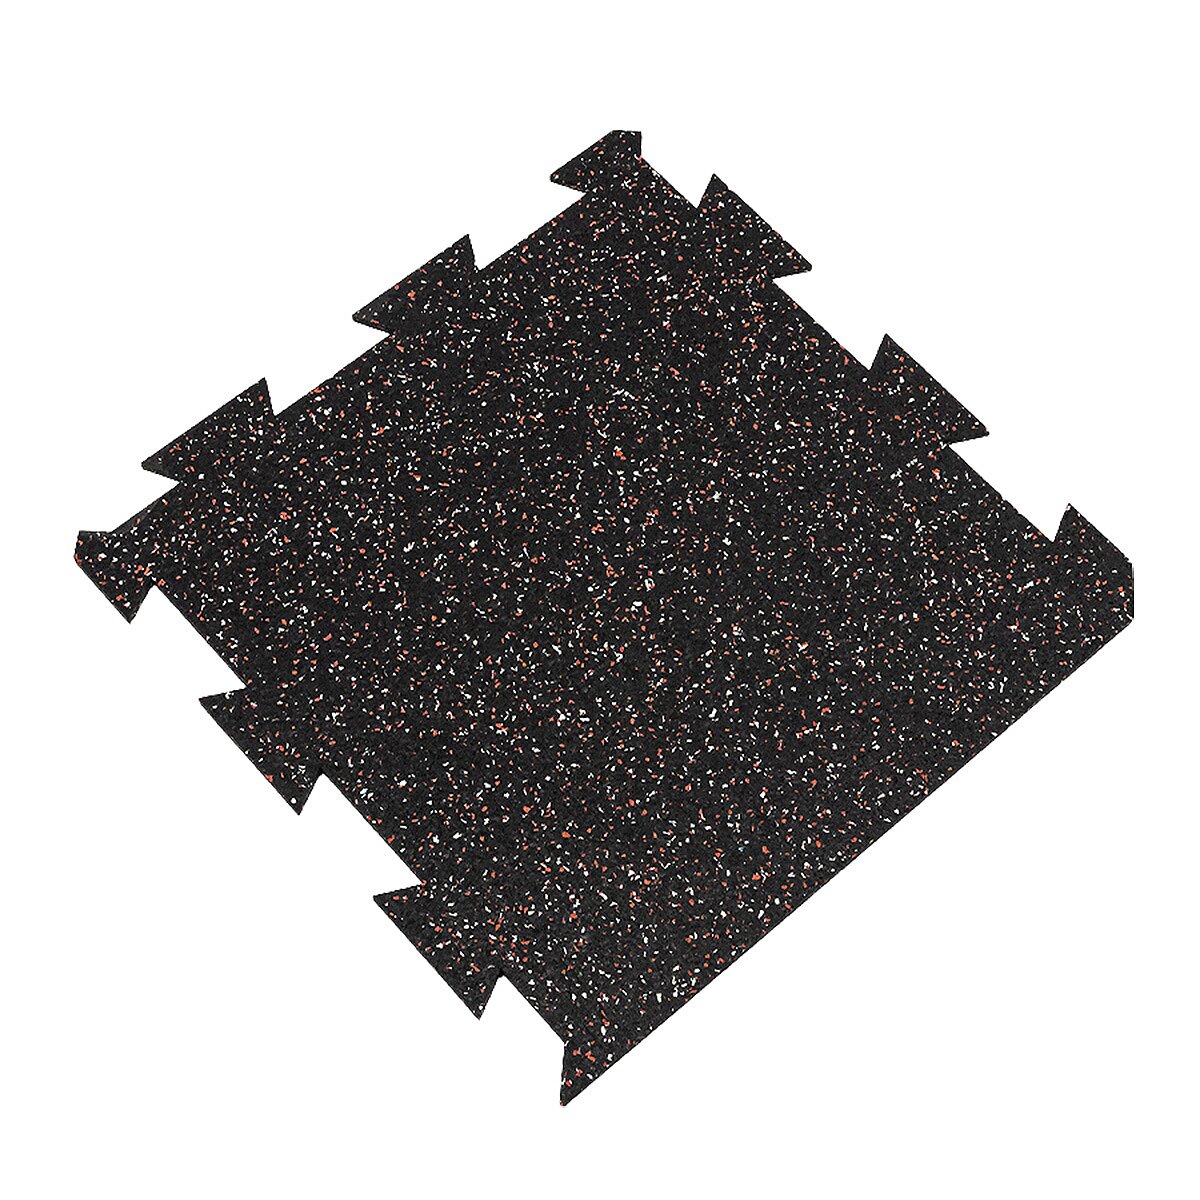 Čierno-bielo-červená gumová modulová puzzle dlažba (okraj) FLOMA FitFlo SF1050 - dĺžka 50 cm, šírka 50 cm, výška 1,6 cm